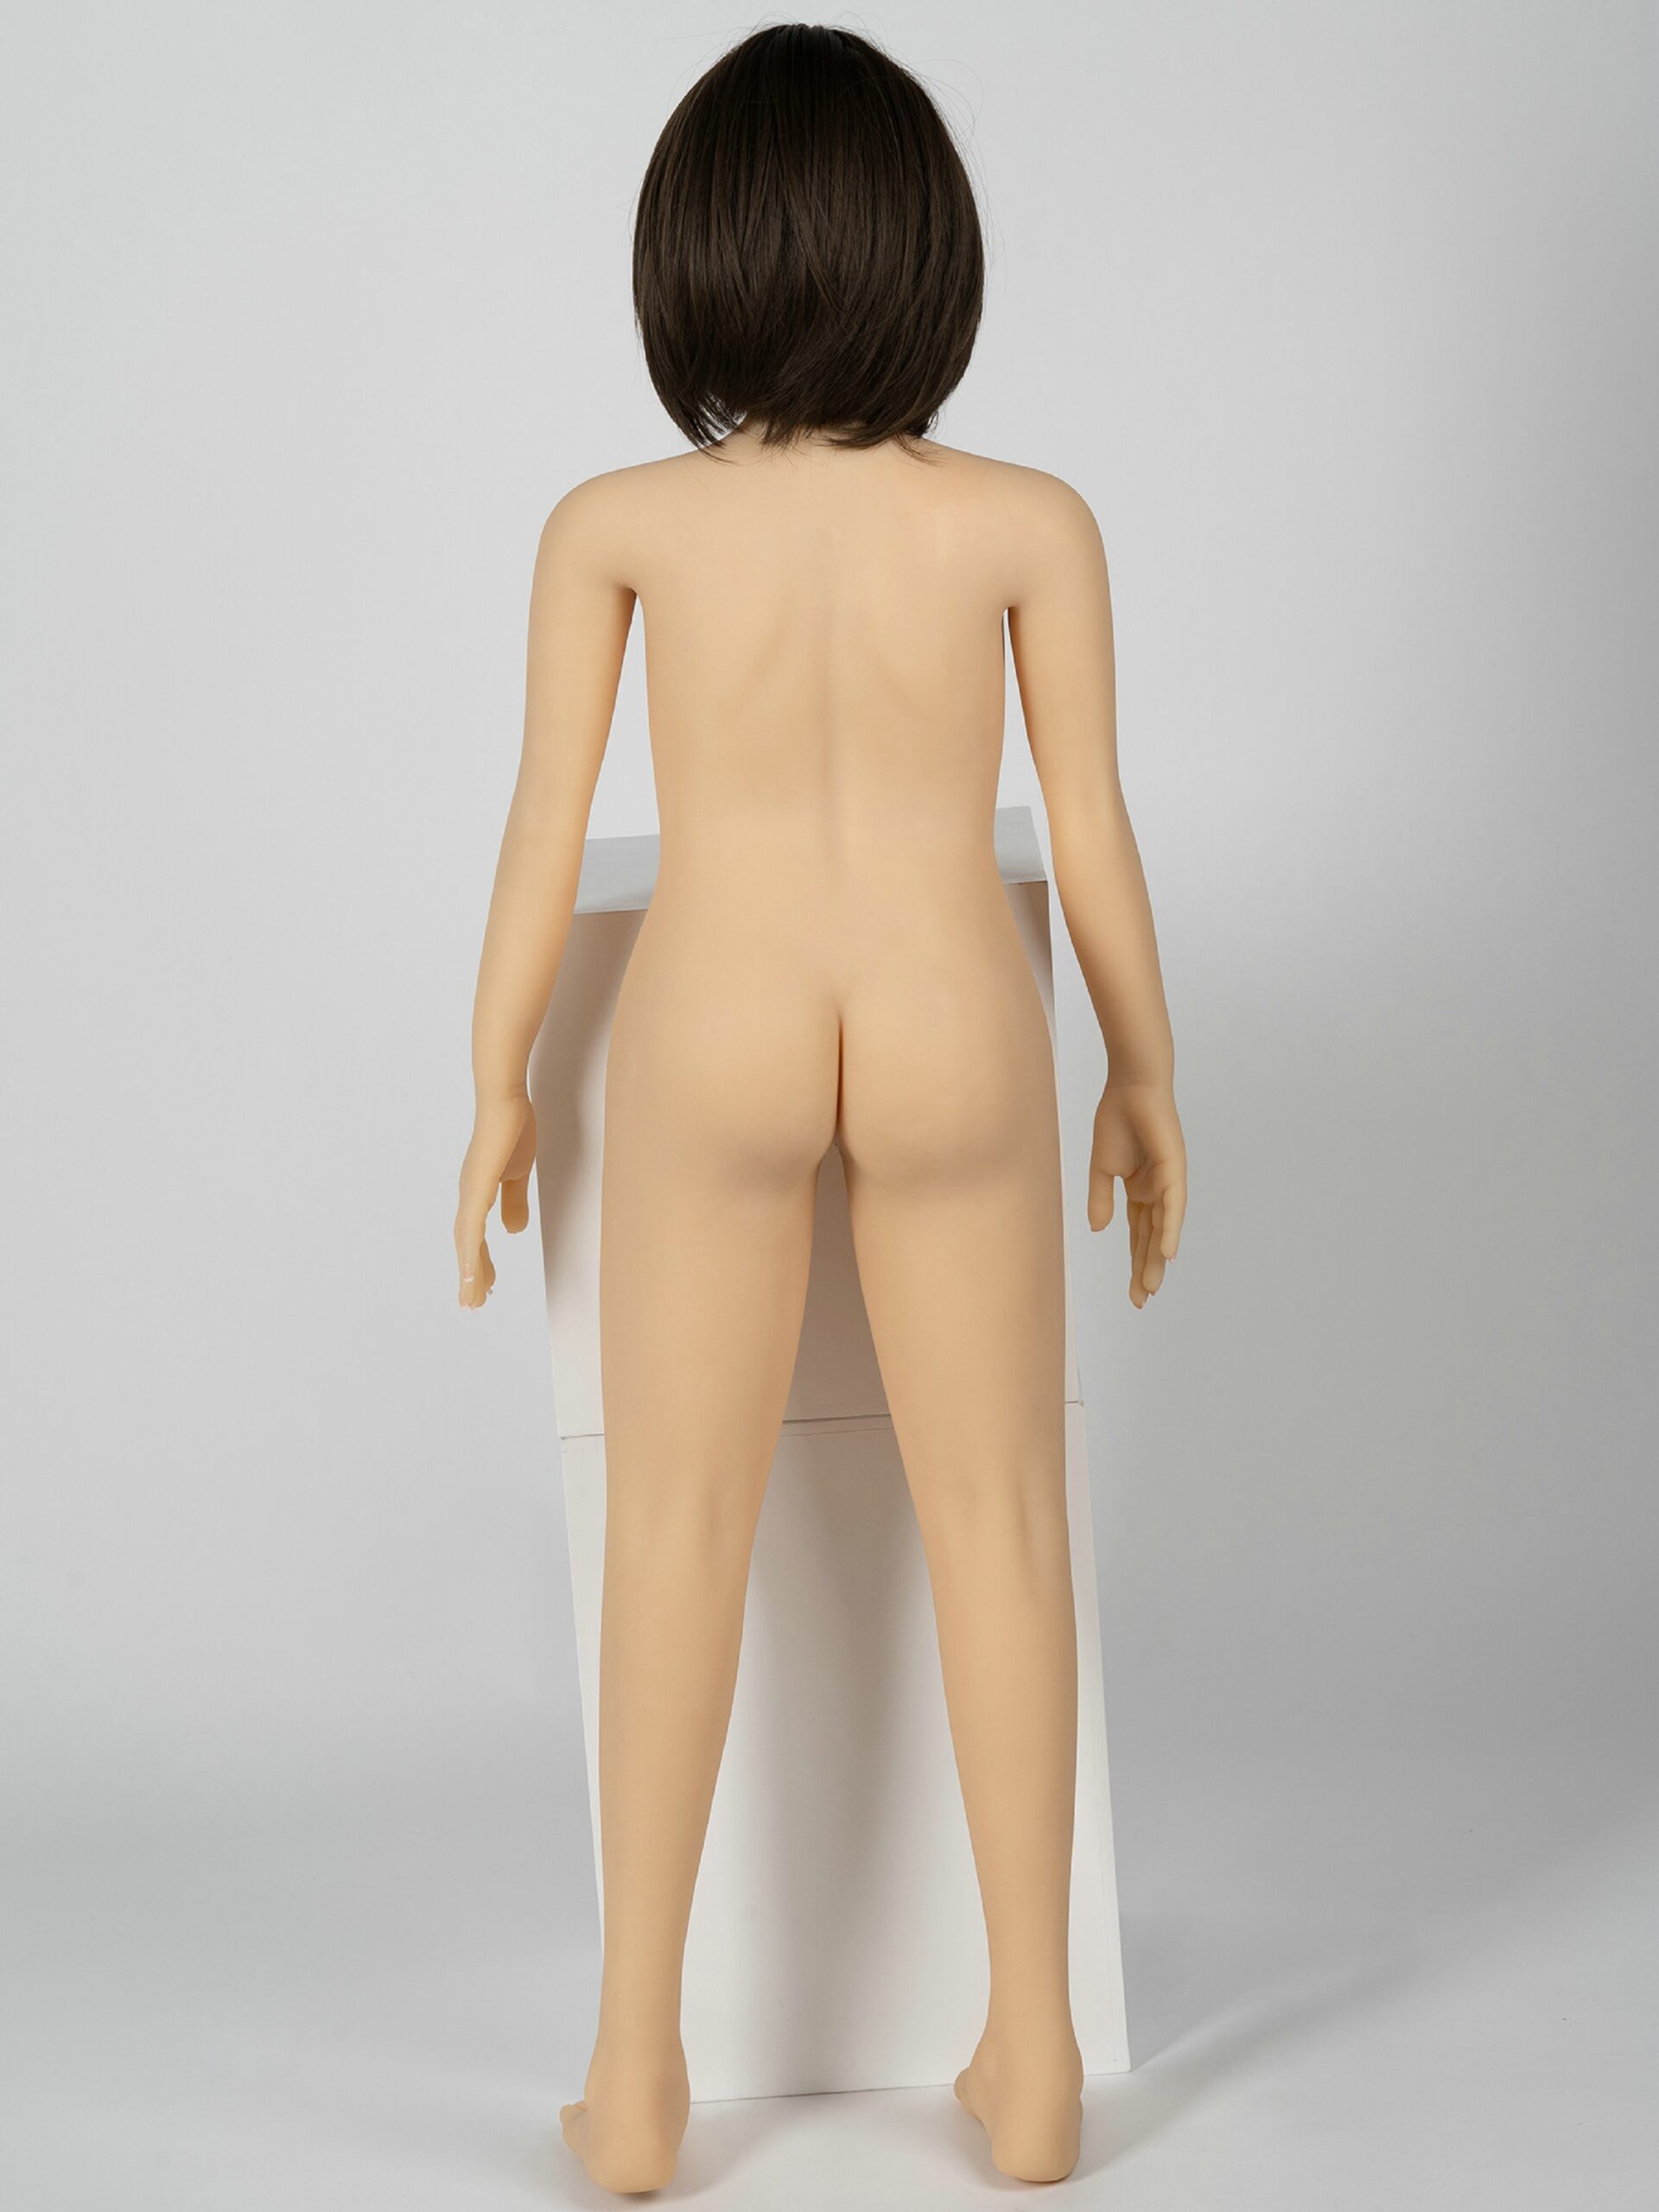 120cm back naked mini sex doll